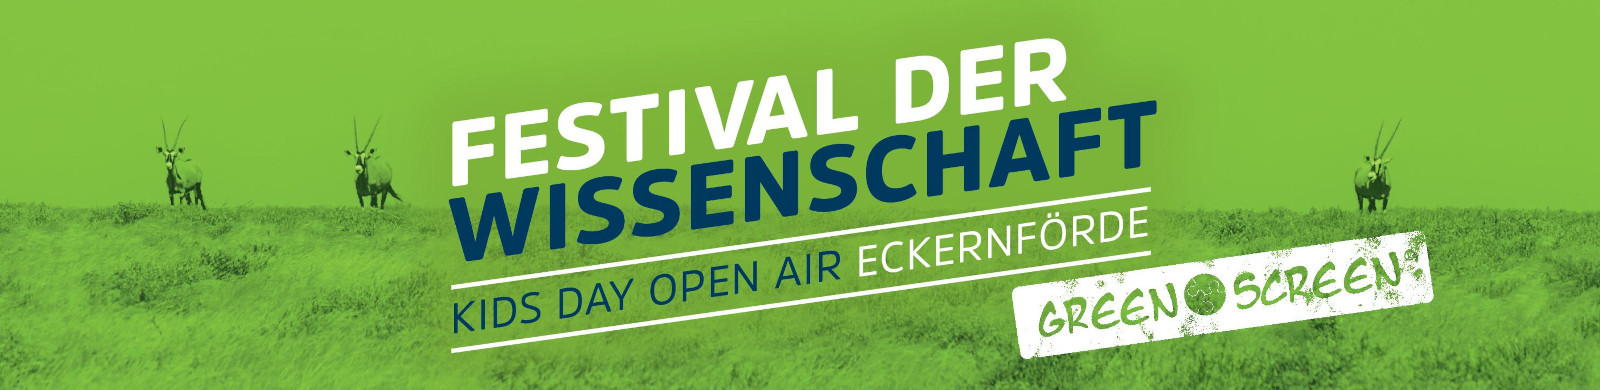 Schriftzug: Festival der Wissenschaft Kids Day open air Eckernförde Green Screen